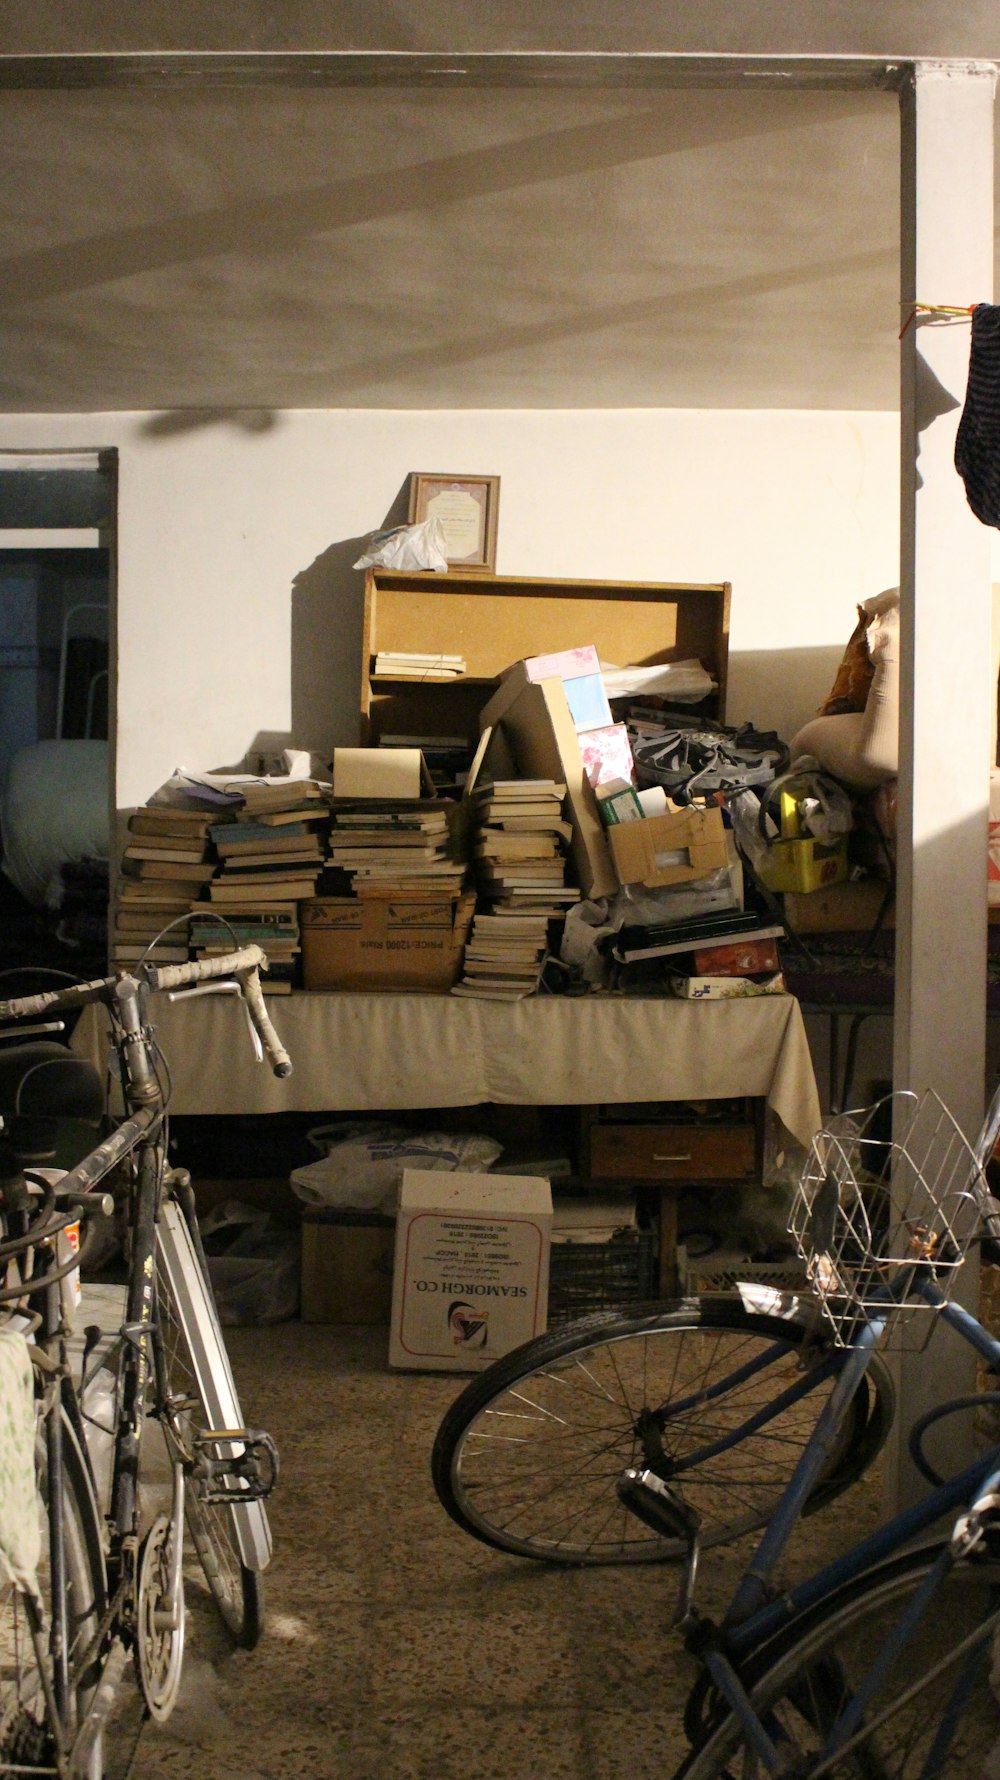 Una habitación llena de mucho desorden y muchas bicicletas